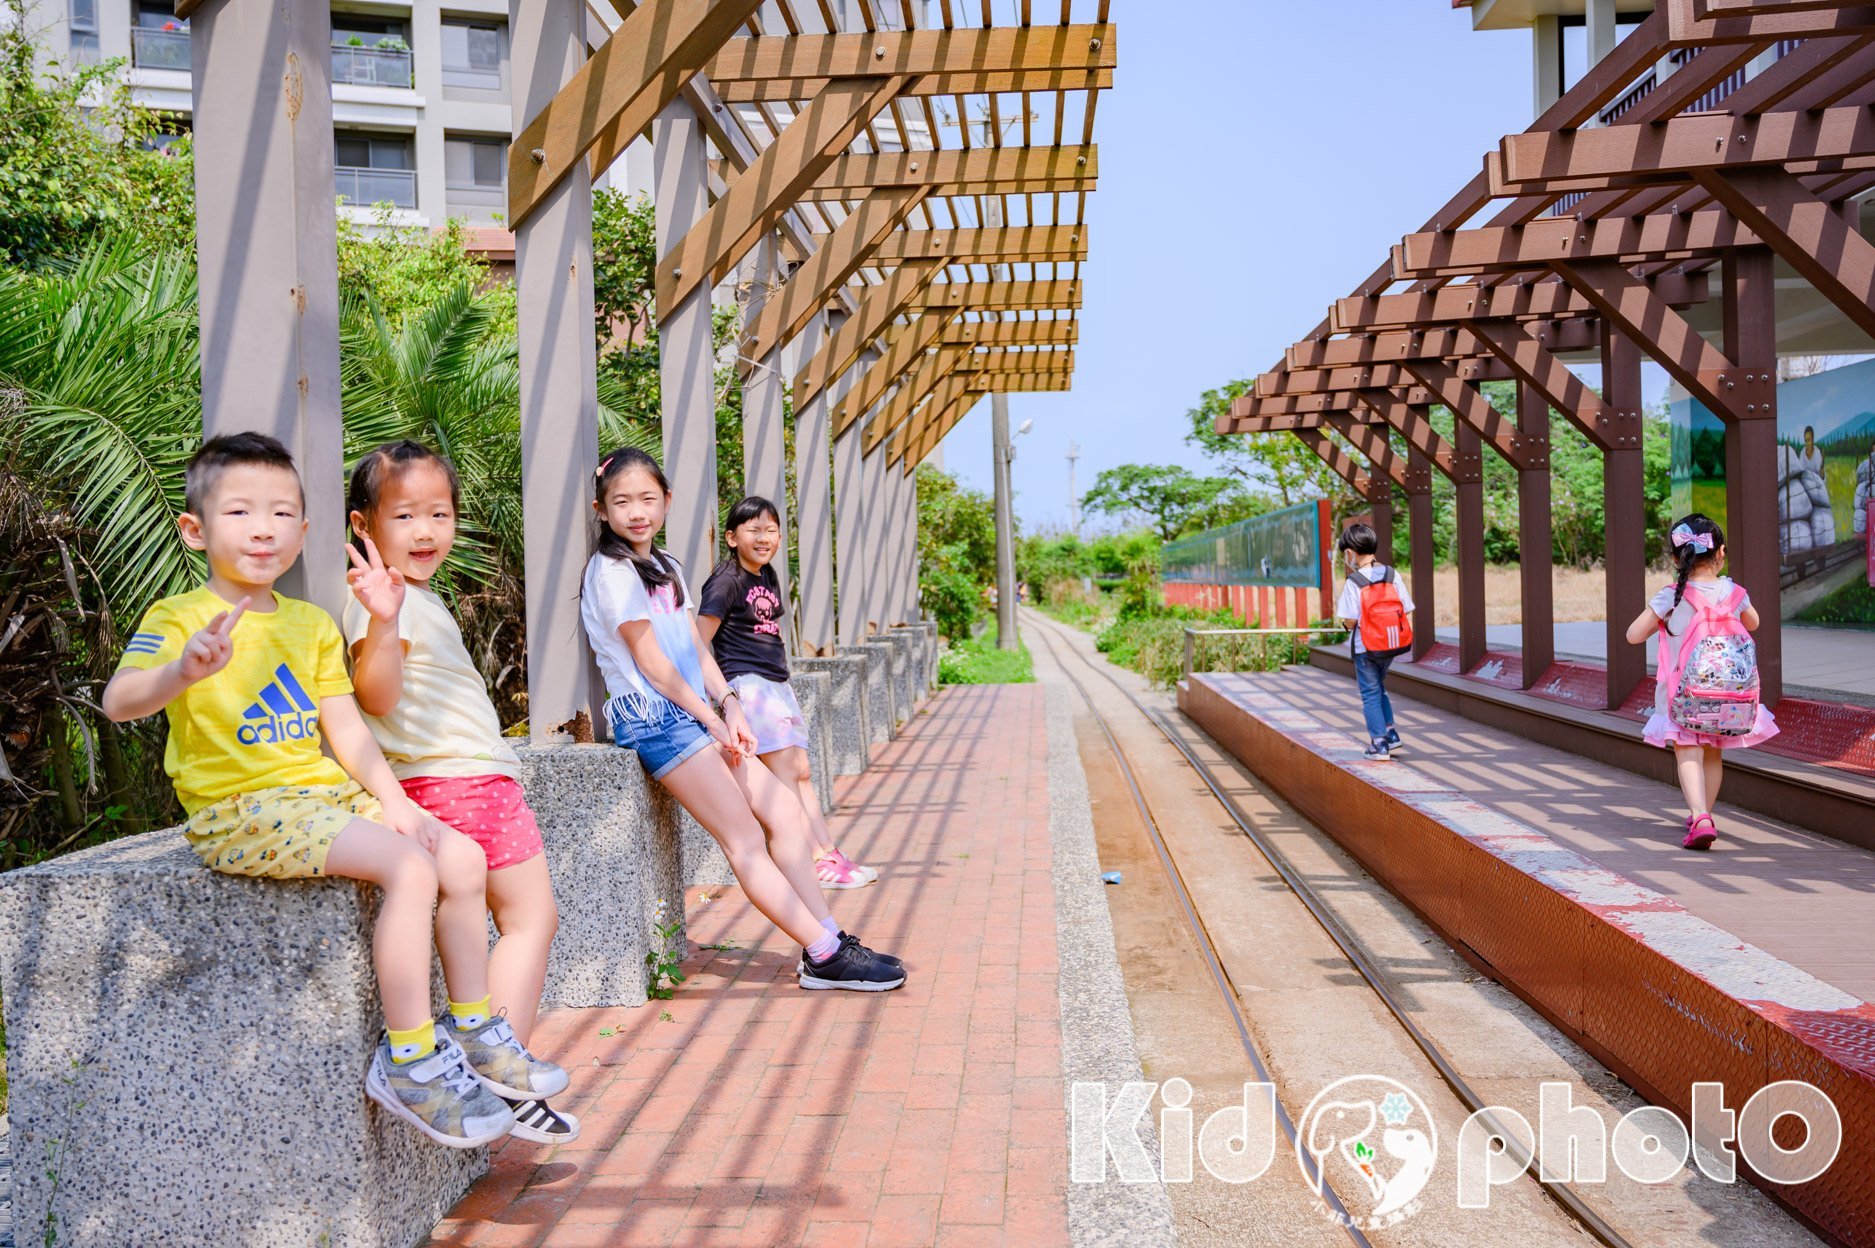 新竹市區景點〡槺榔驛〡來去搭麋鹿小火車, 小孩五十元遊槺榔, 火車迷必踩親子點, Q萌12生肖伴遊